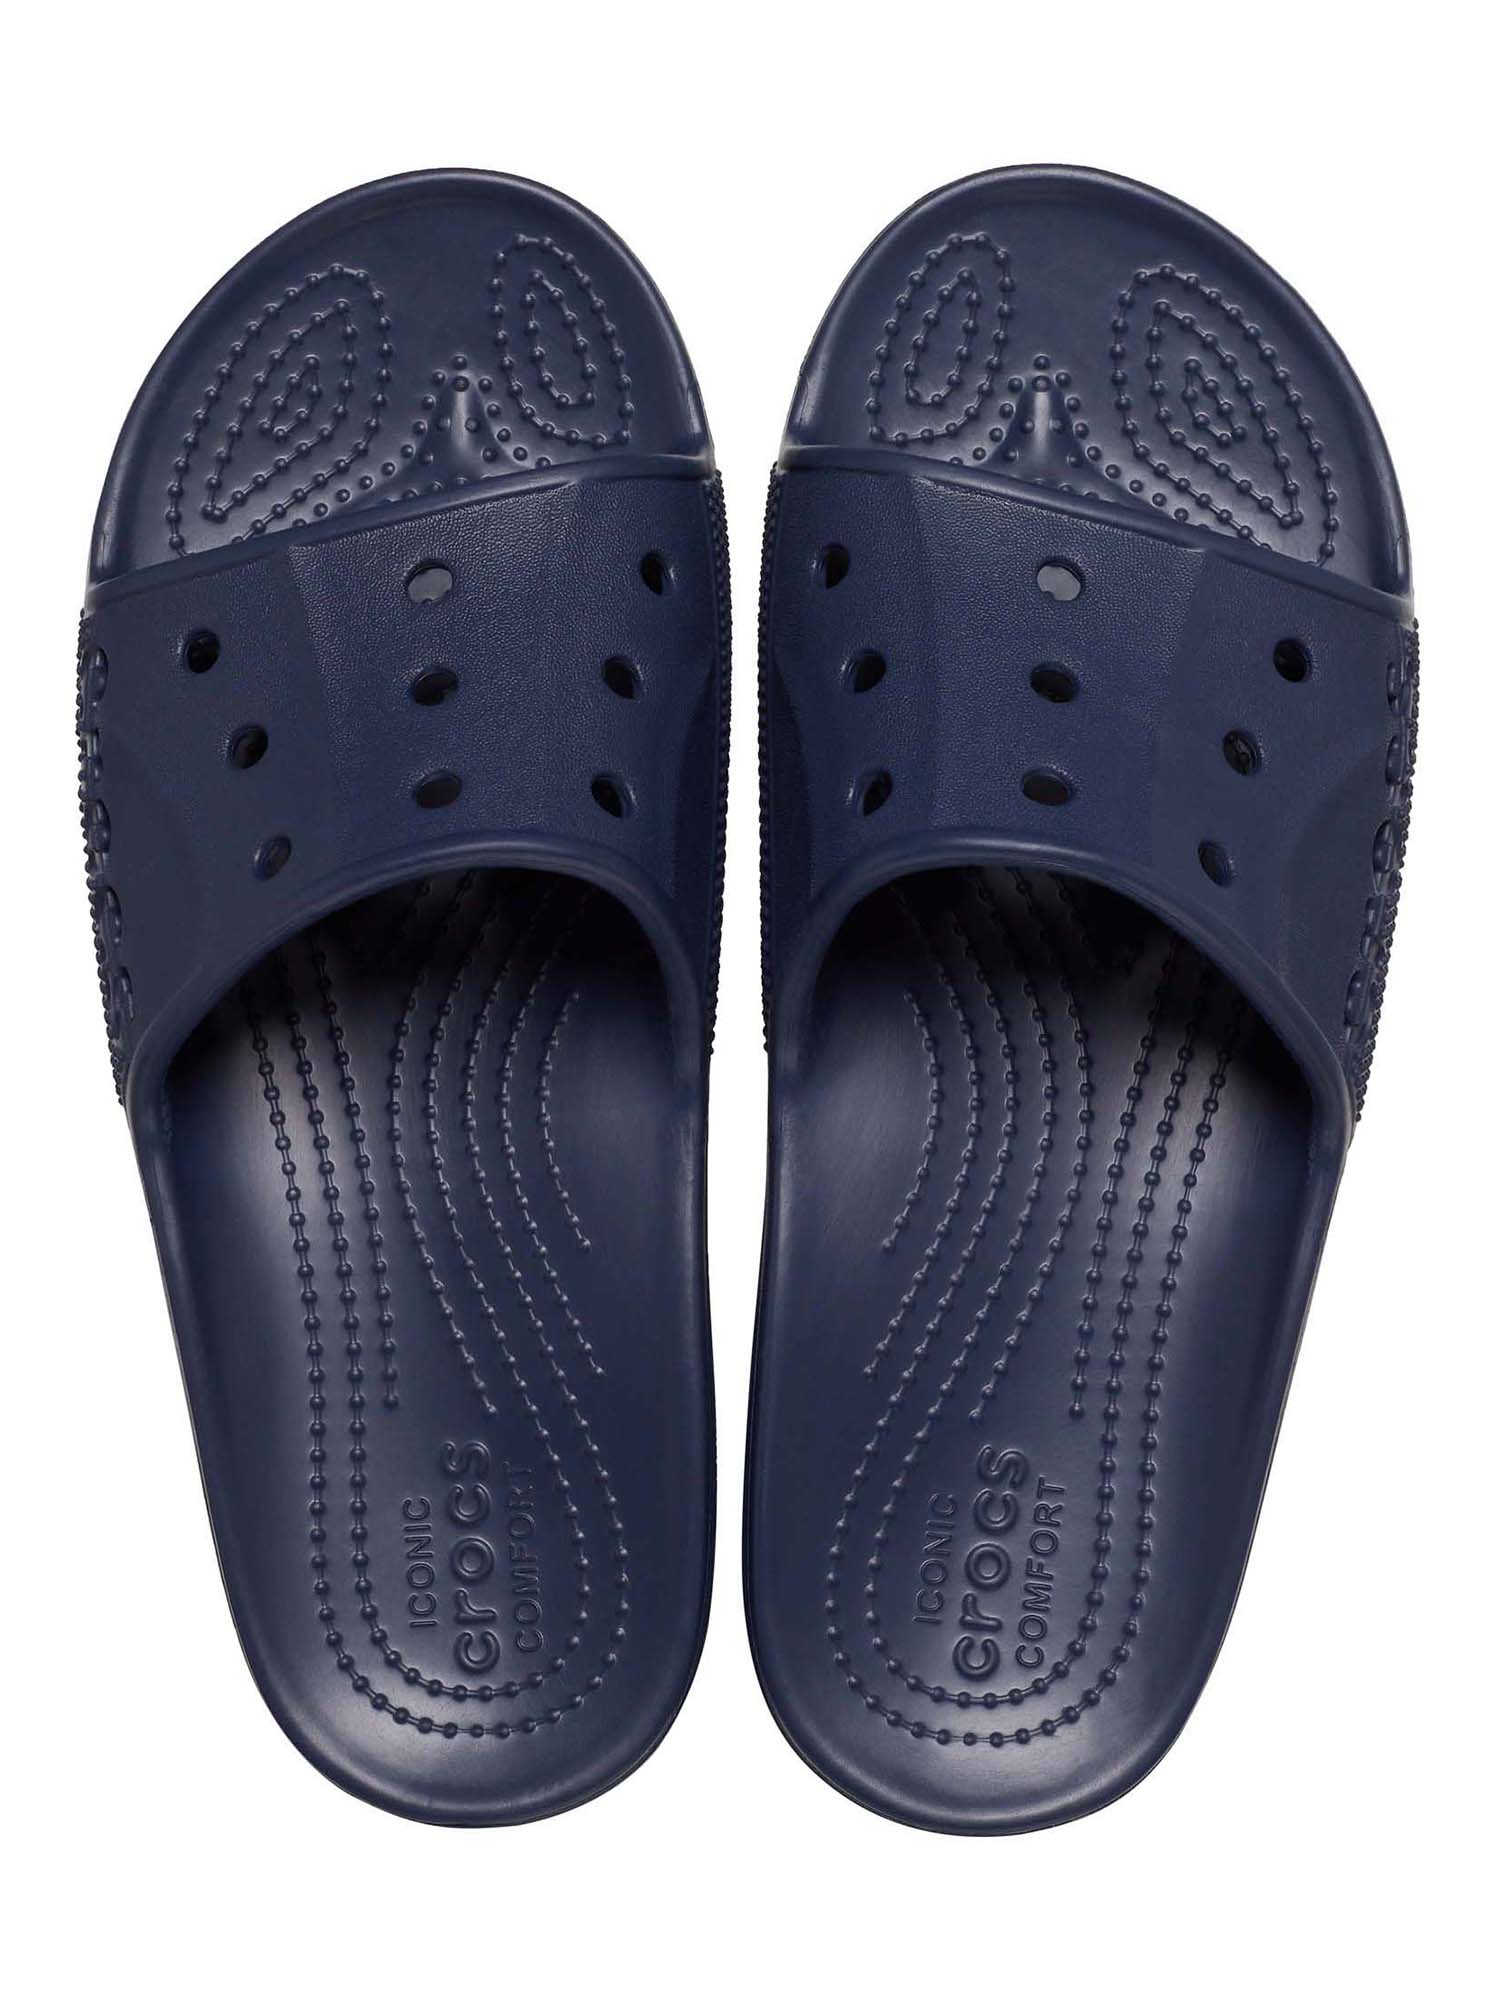 Crocs Men’s and Women’s Unisex Baya II Slide Sandals - image 3 of 5